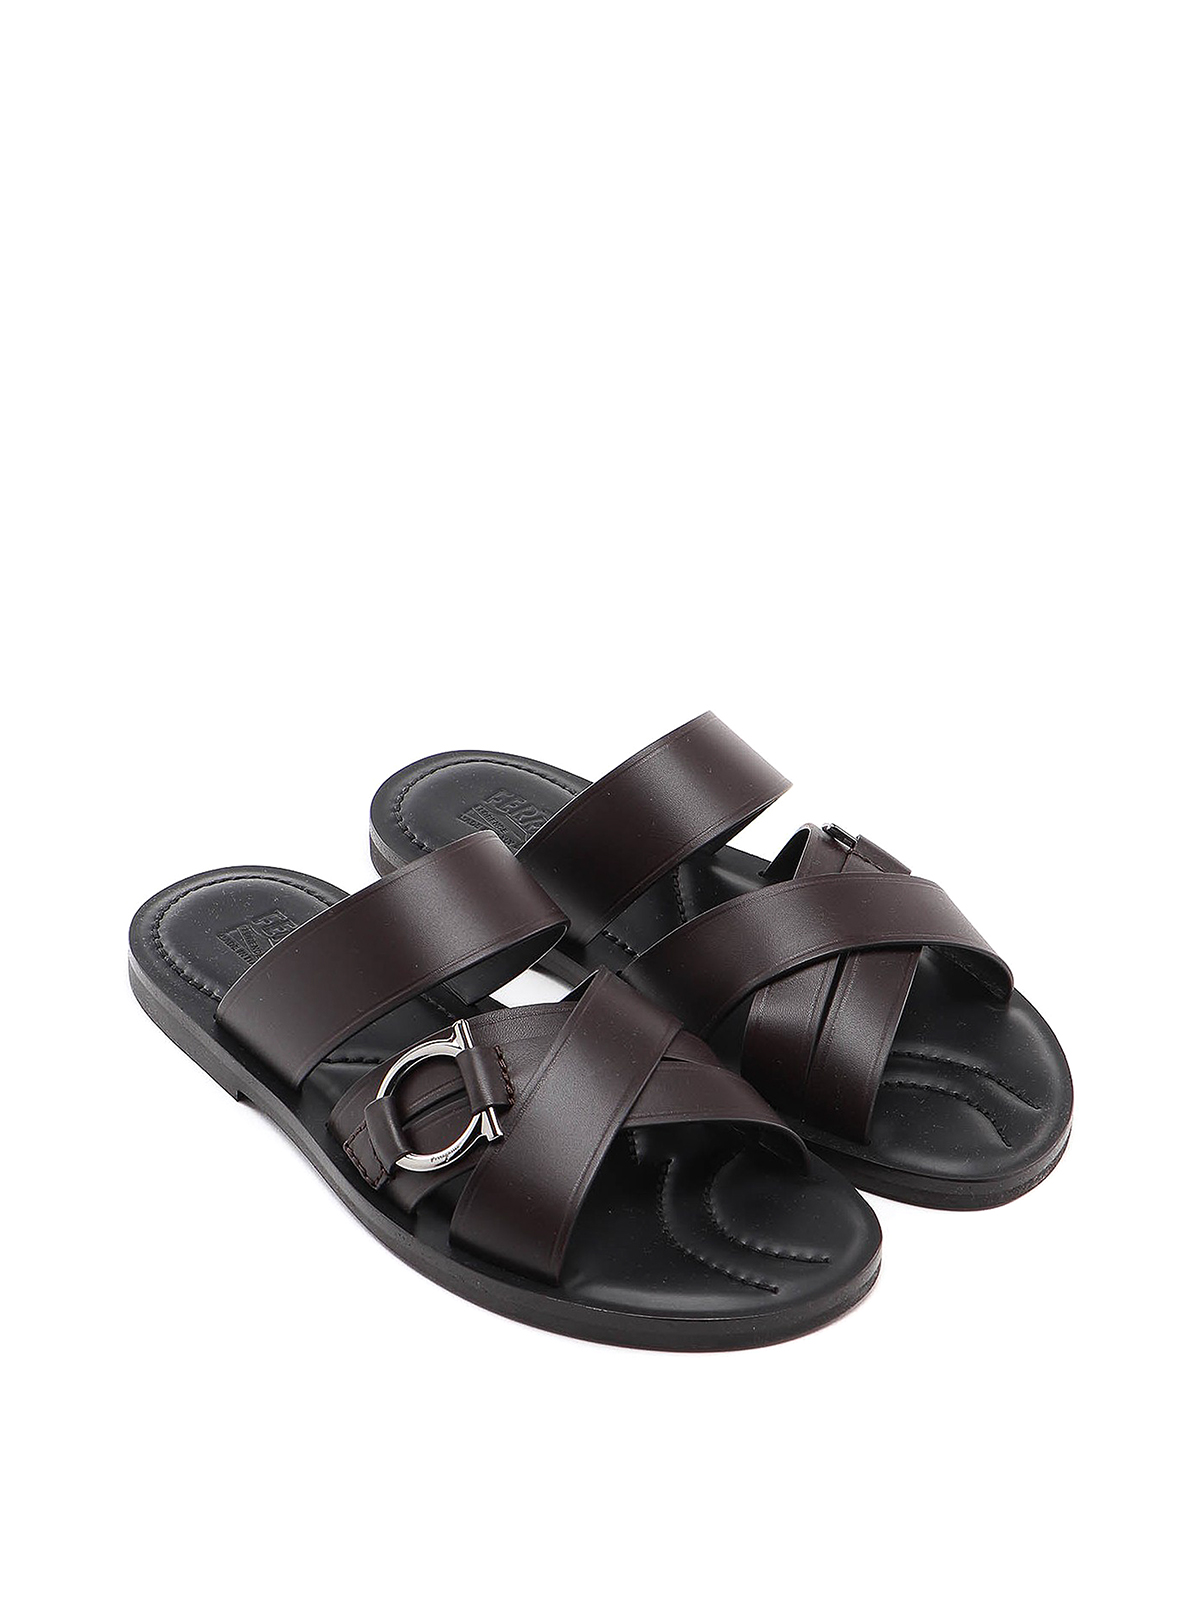 Sandals Salvatore Ferragamo Black size 9 US in Rubber - 25253177